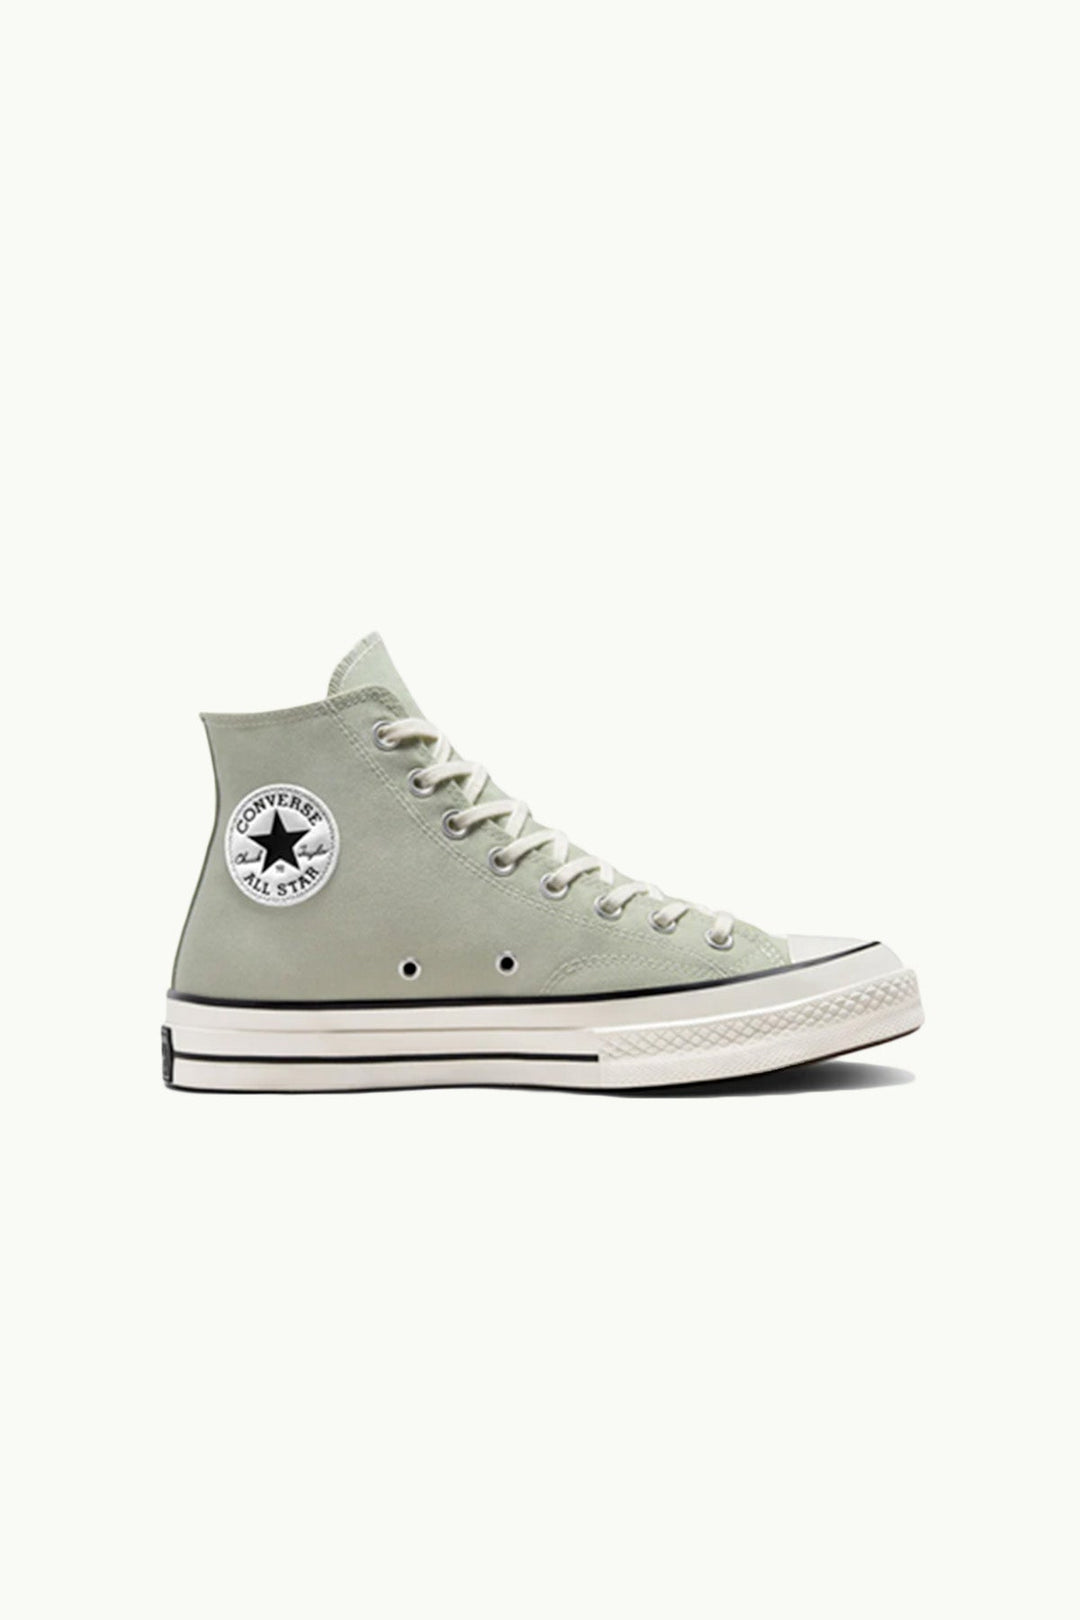 נעלי Chuck 70 בצבע תה ירוק - Converse